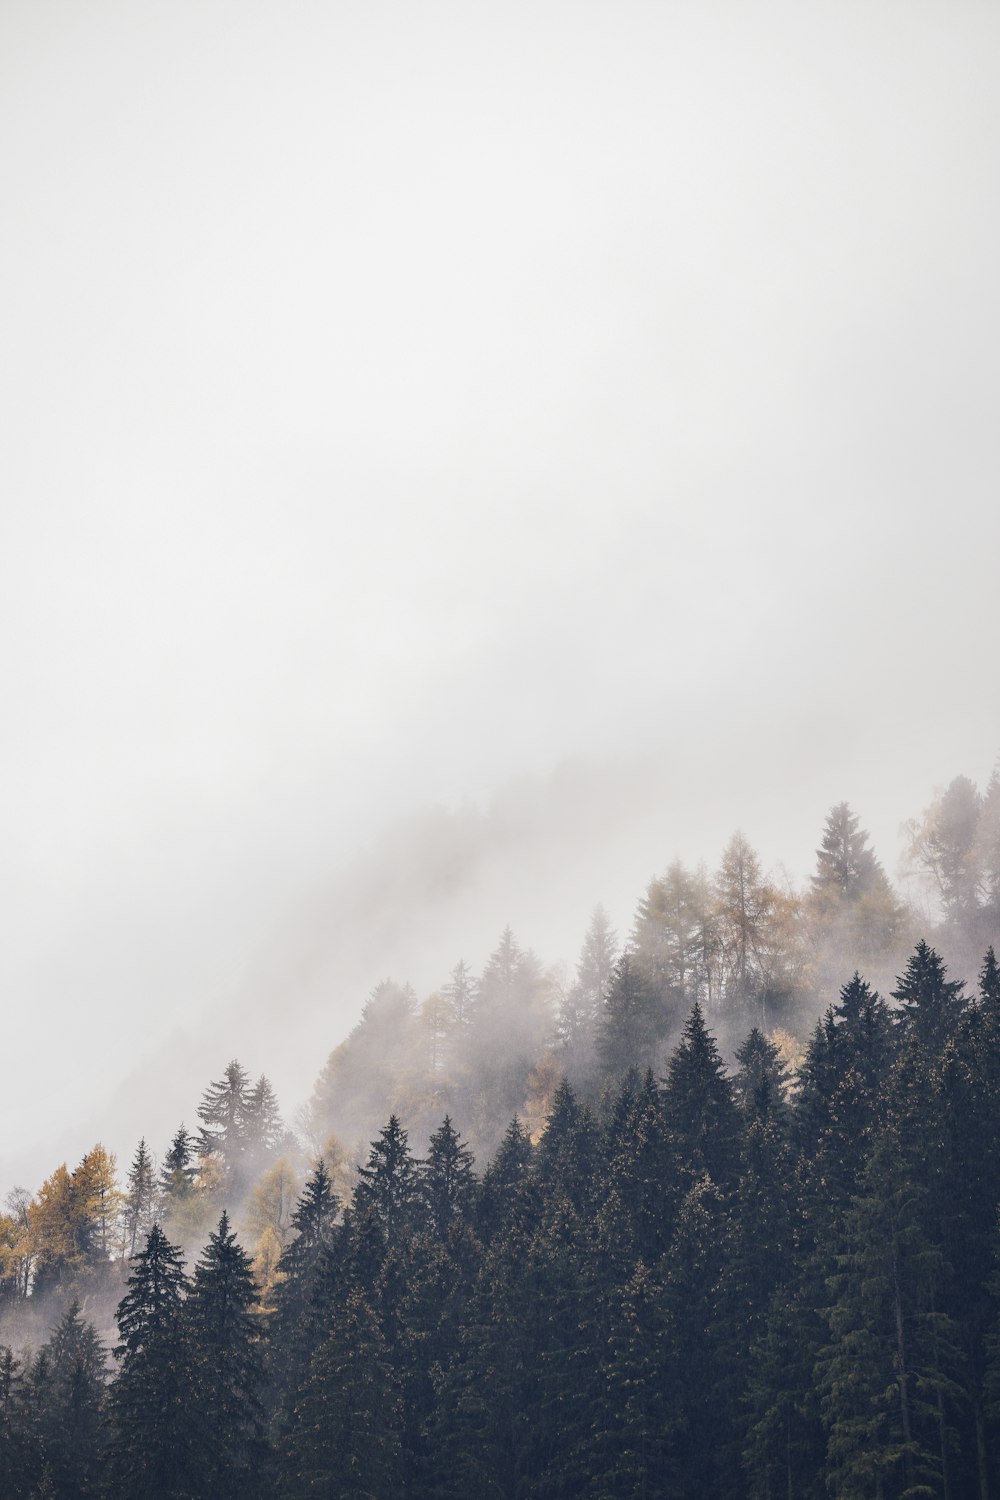 montanha com árvores altas cobertas de nevoeiros